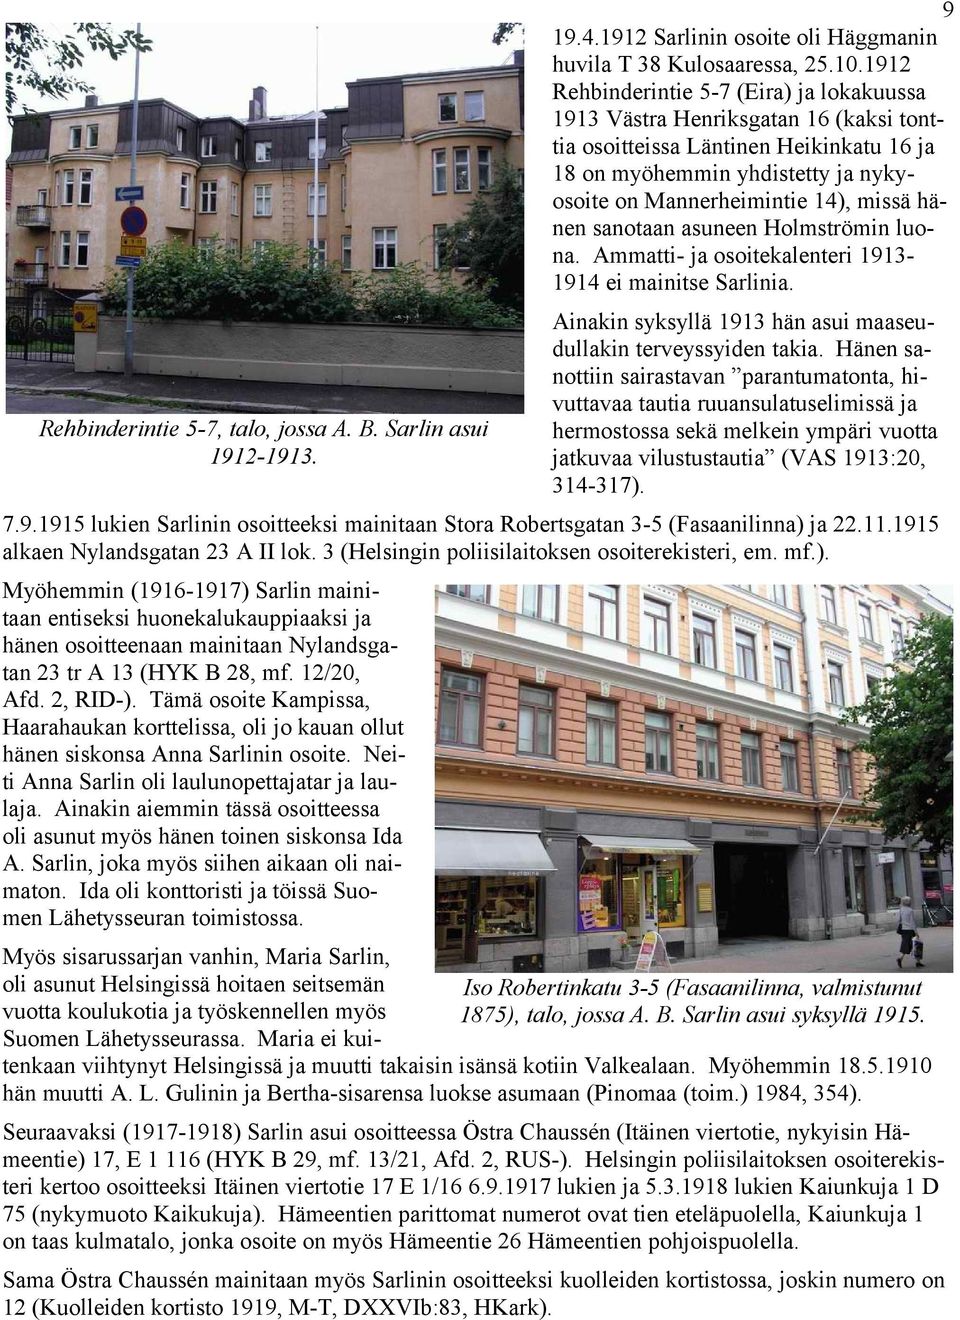 hänen sanotaan asuneen Holmströmin luona. Ammatti- ja osoitekalenteri 19131914 ei mainitse Sarlinia. Rehbinderintie 5-7, talo, jossa A. B. Sarlin asui 1912-1913.